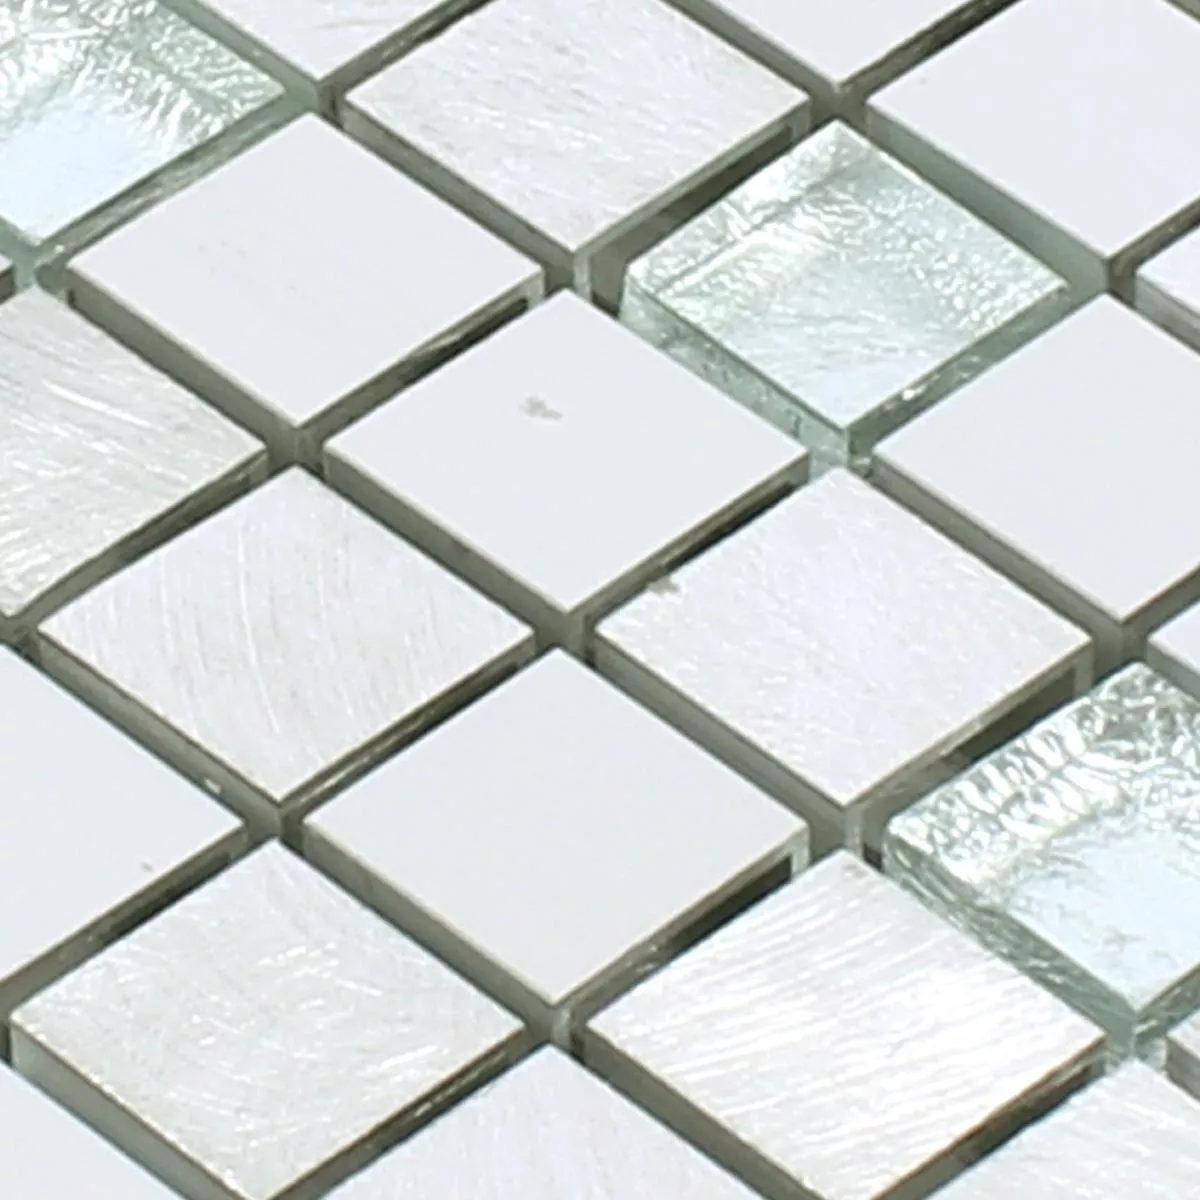 Prøve Mosaik Fliser Lissabon Aluminium Glas Mix Sølv